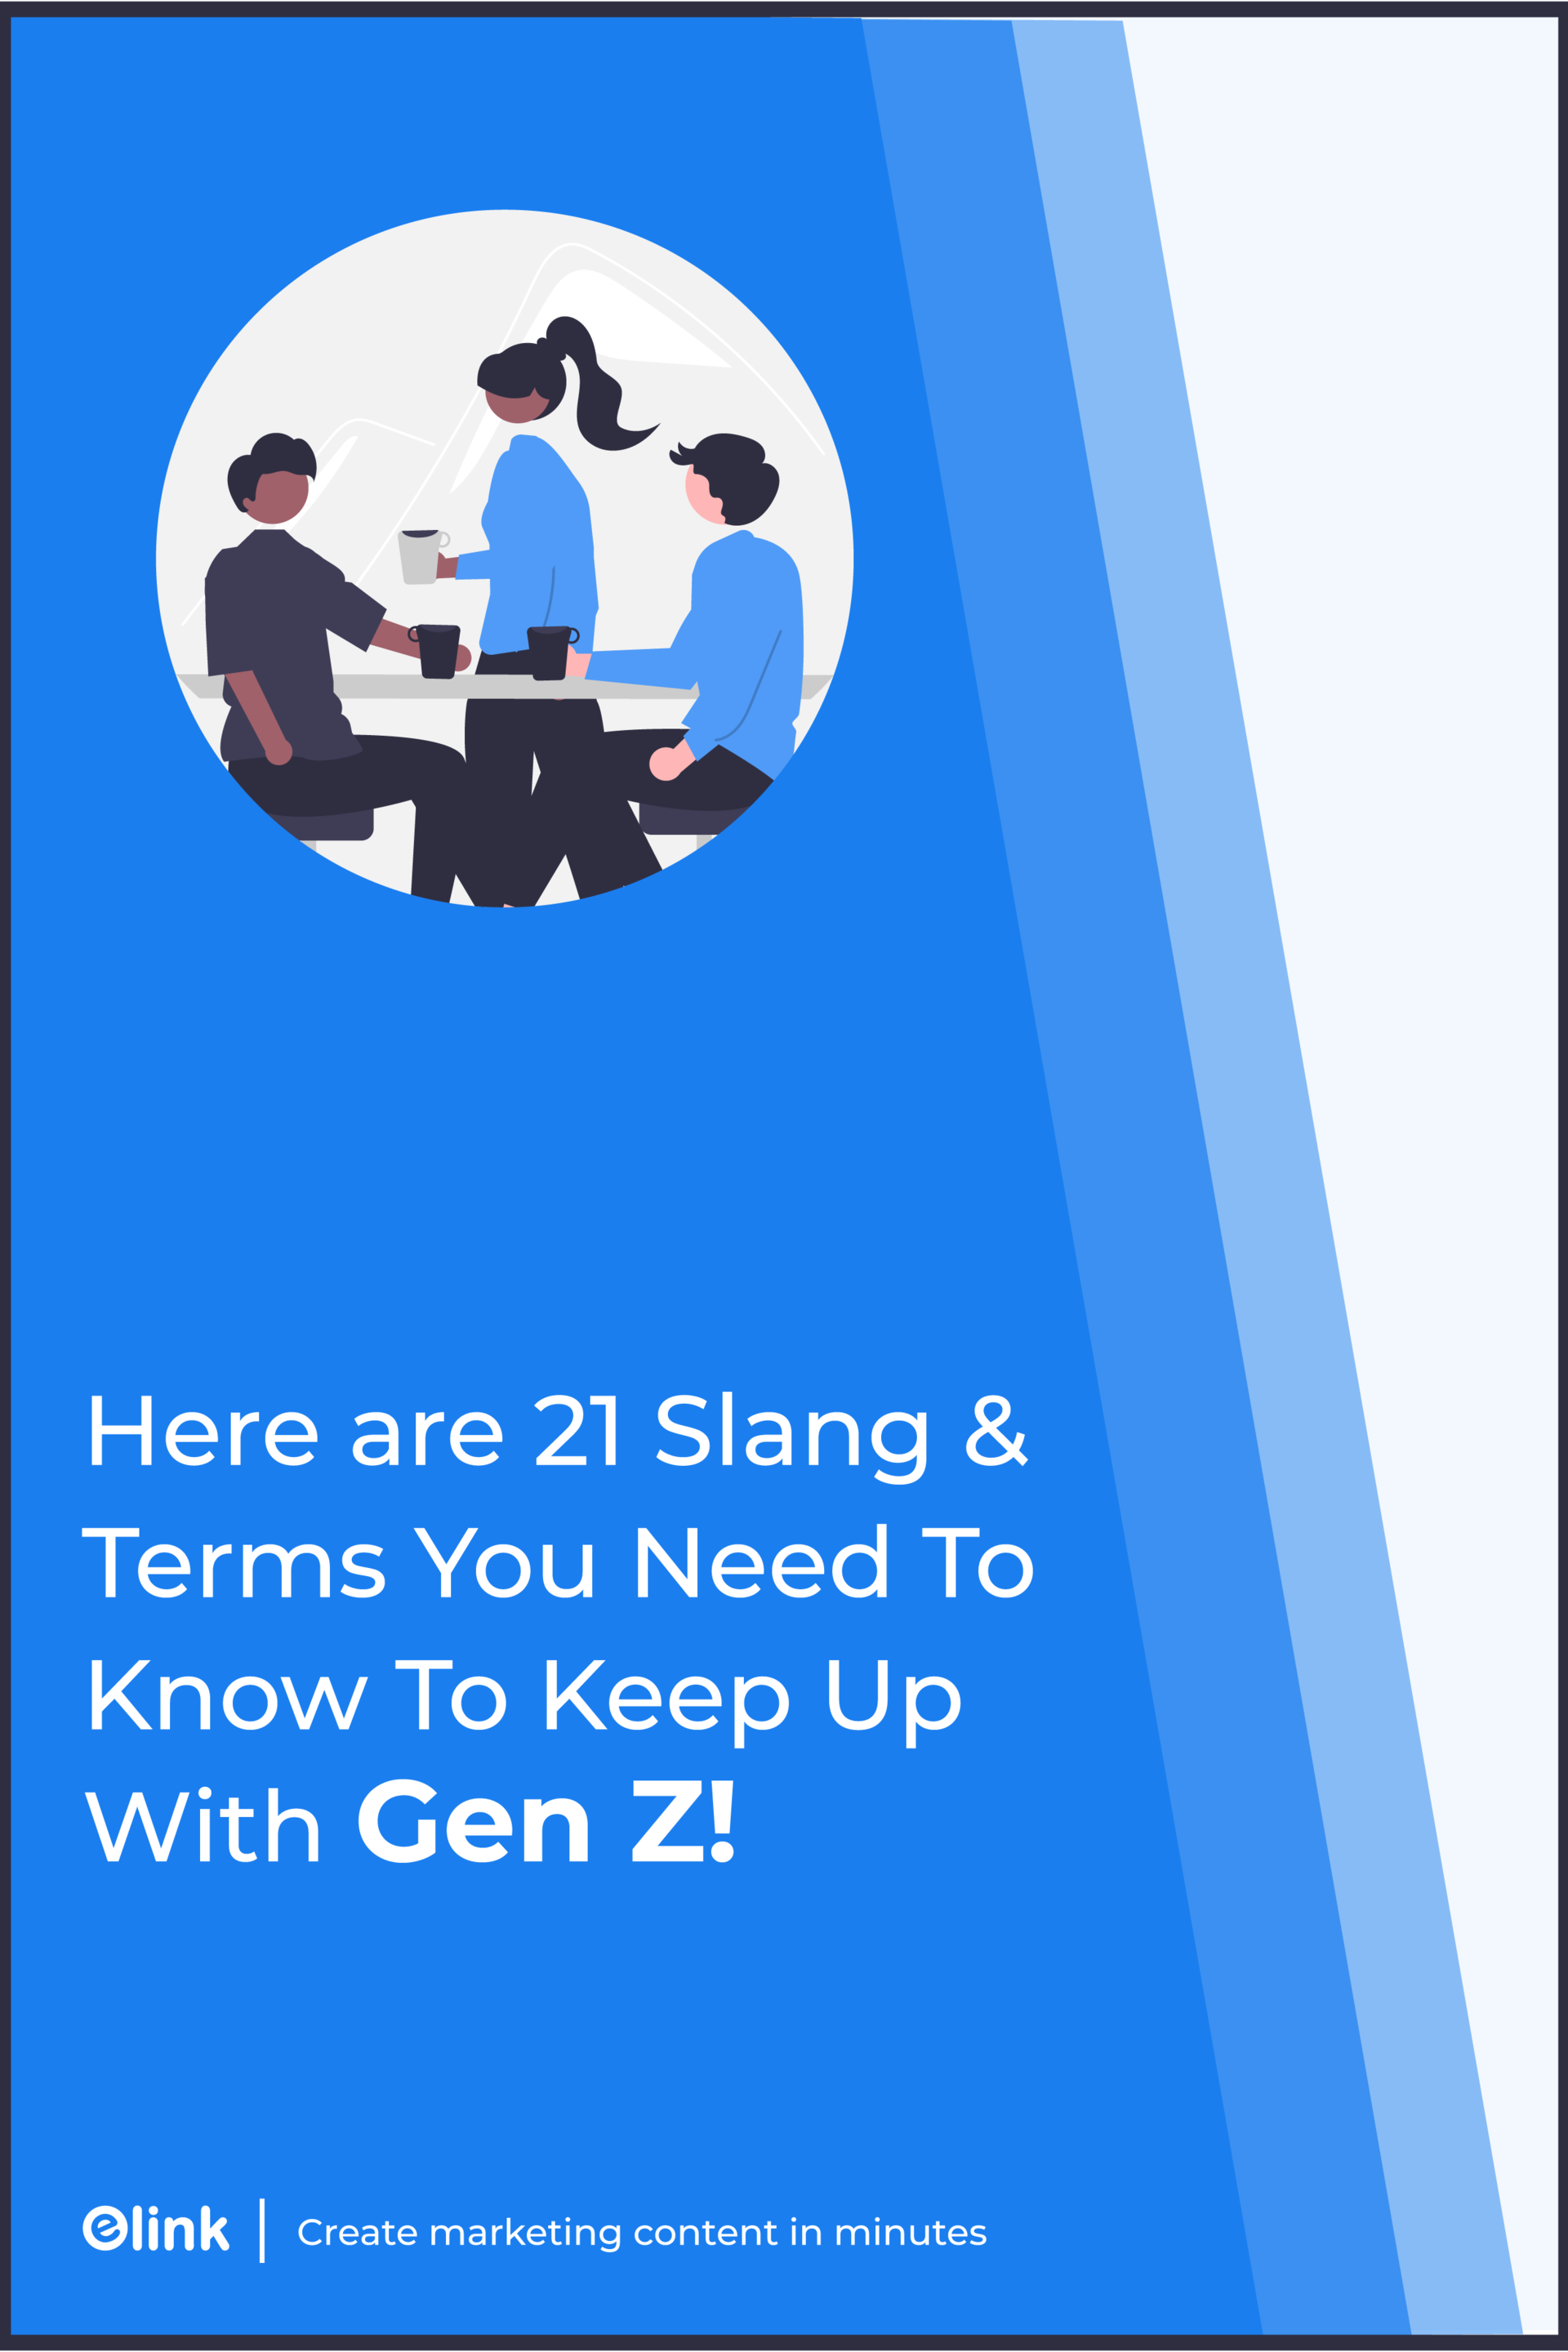 Banner de jerga y términos de Gen Z